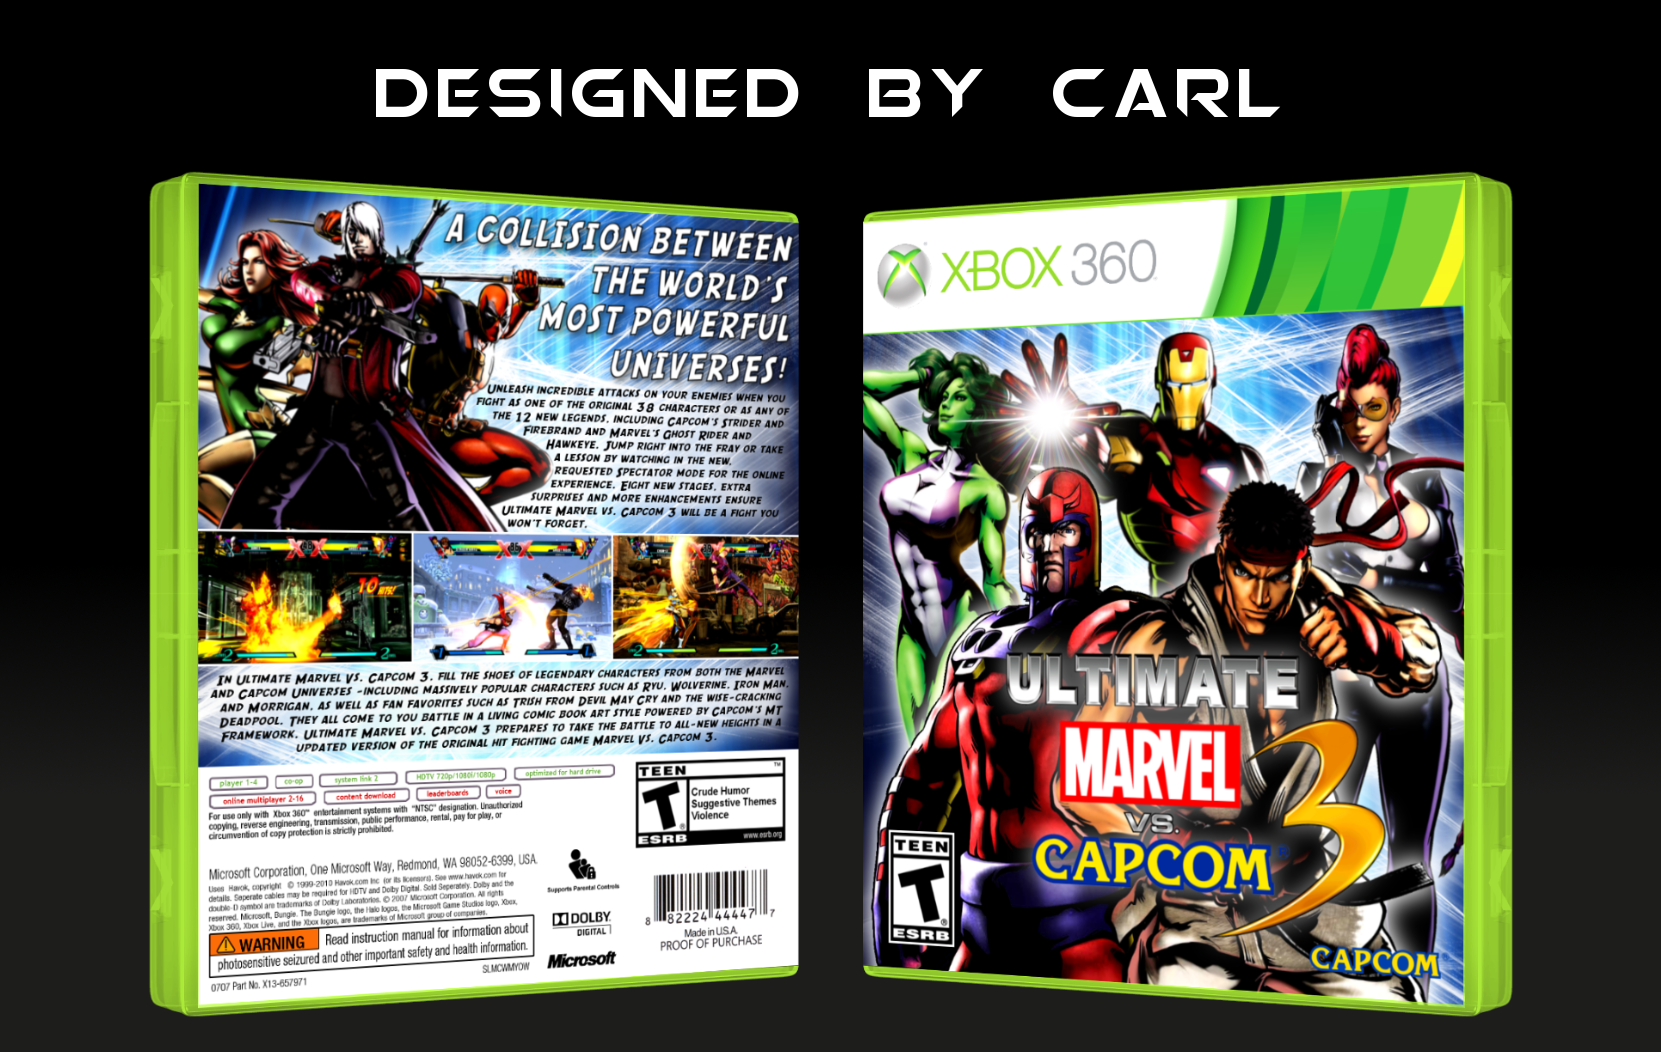 Ultimate Marvel vs. Capcom 3 box cover